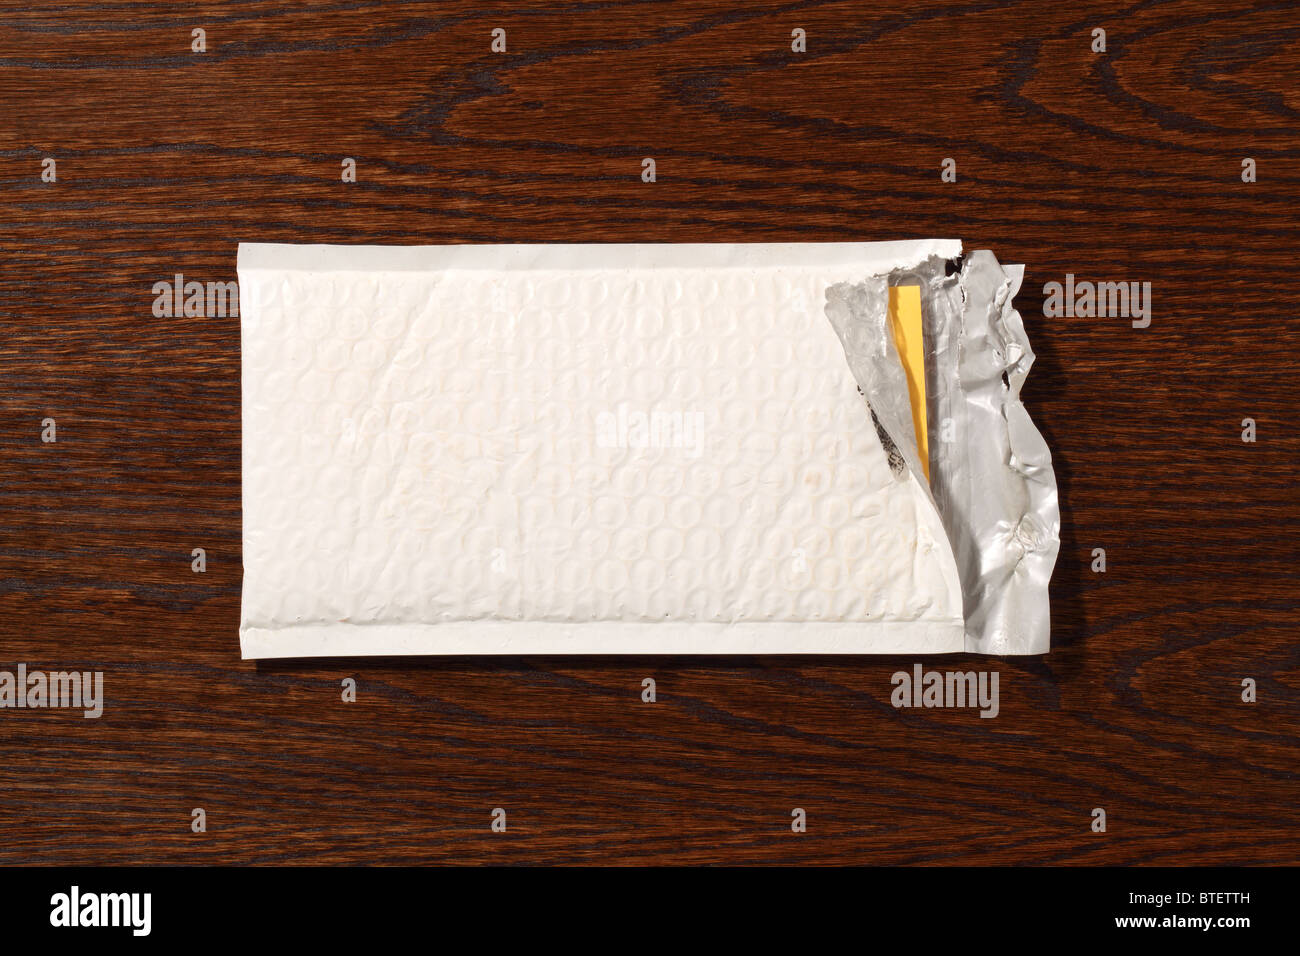 Une enveloppe postale postal utilisé à ouvrir. Un bois marron foncé 24 contexte Banque D'Images